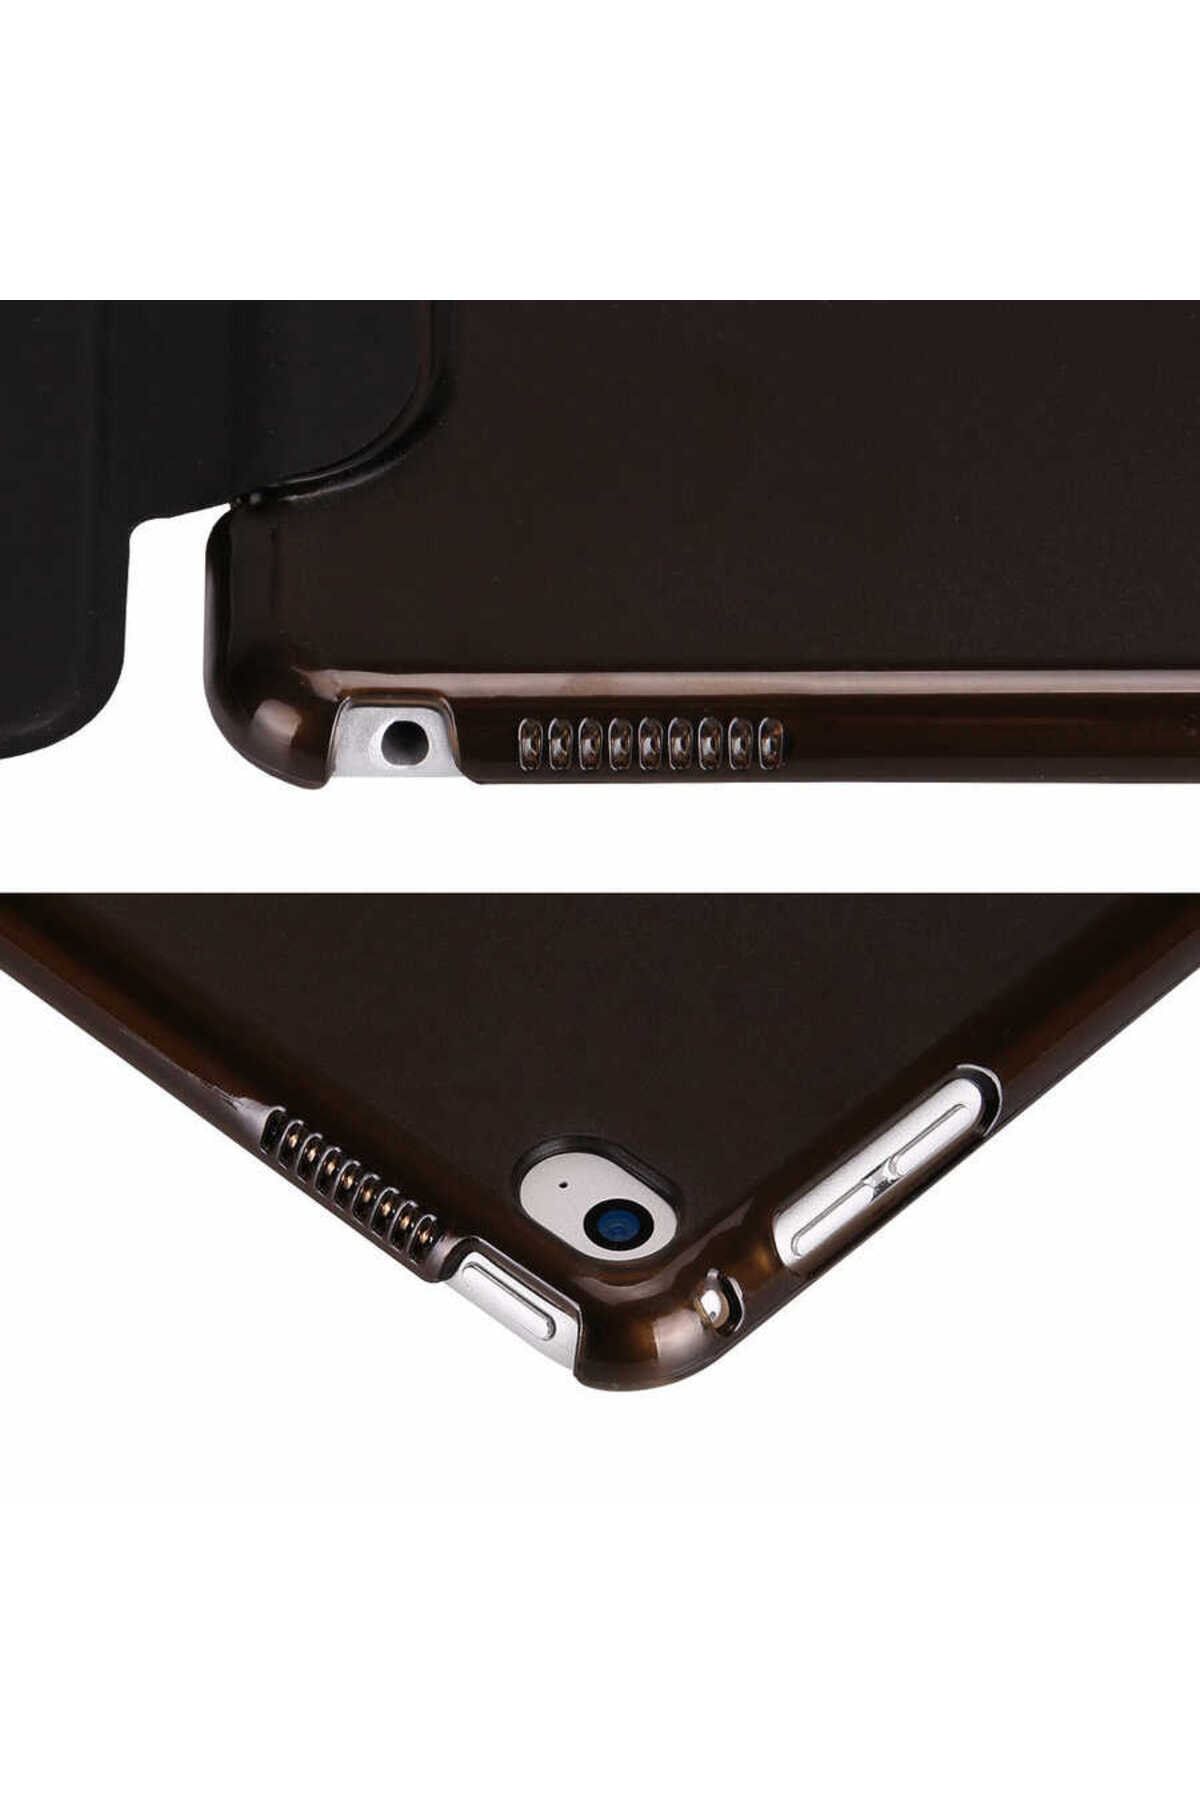 Gpack Samsung Galaxy Tab A7 Lite T225 Kılıf Smart Cover Kapaklı Standlı sm11 + Nano + Kalem Bronz